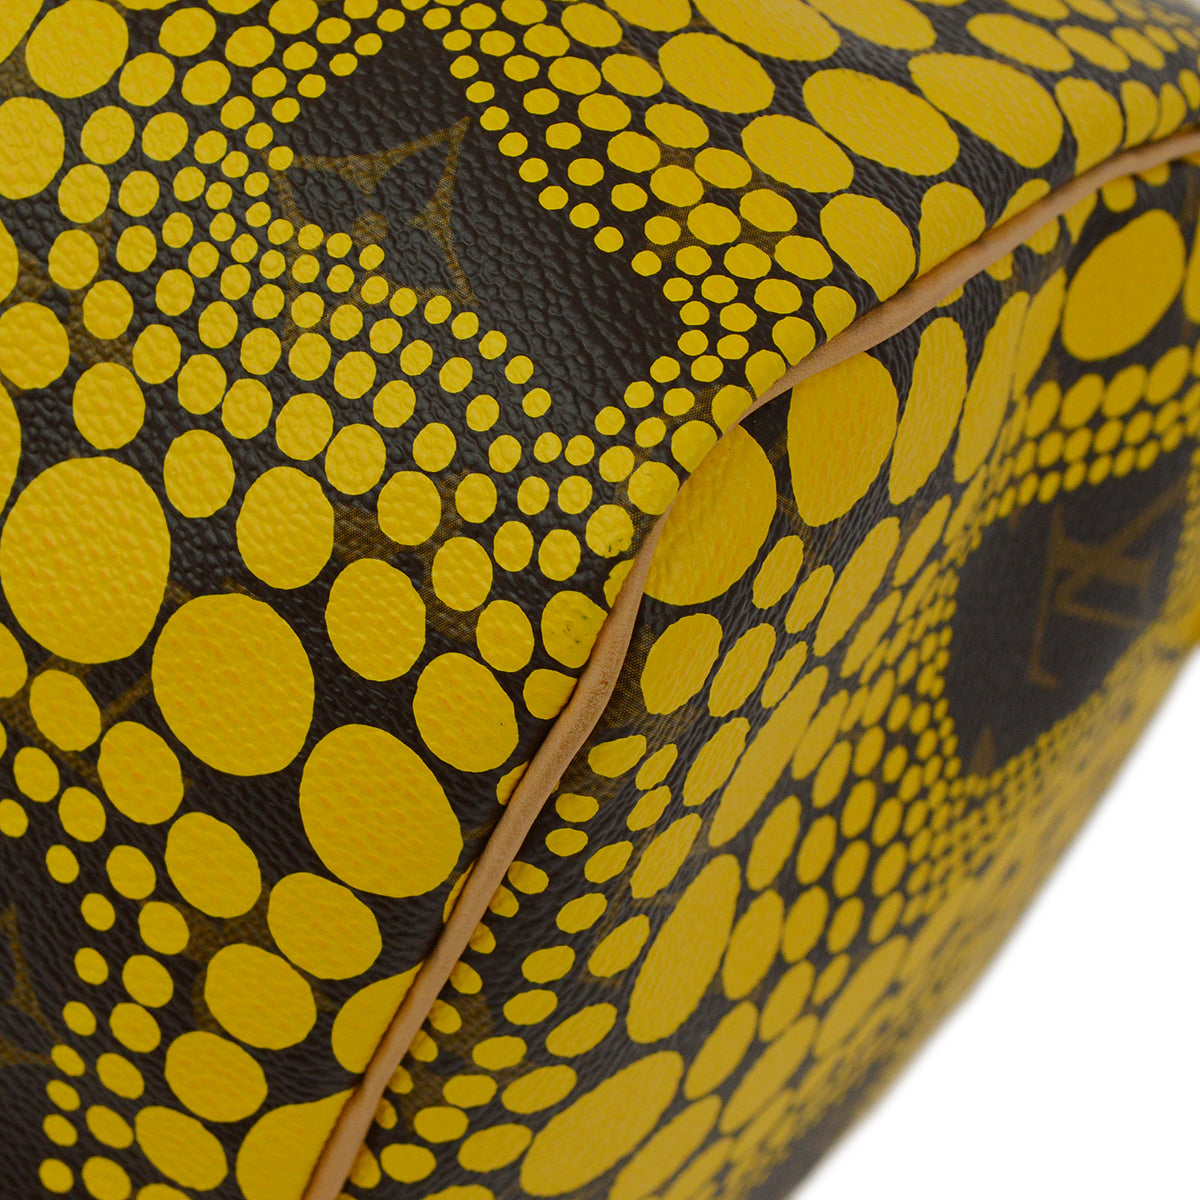 Louis Vuitton 2012 黃色南瓜點 Speedy 30 手提包 M40692